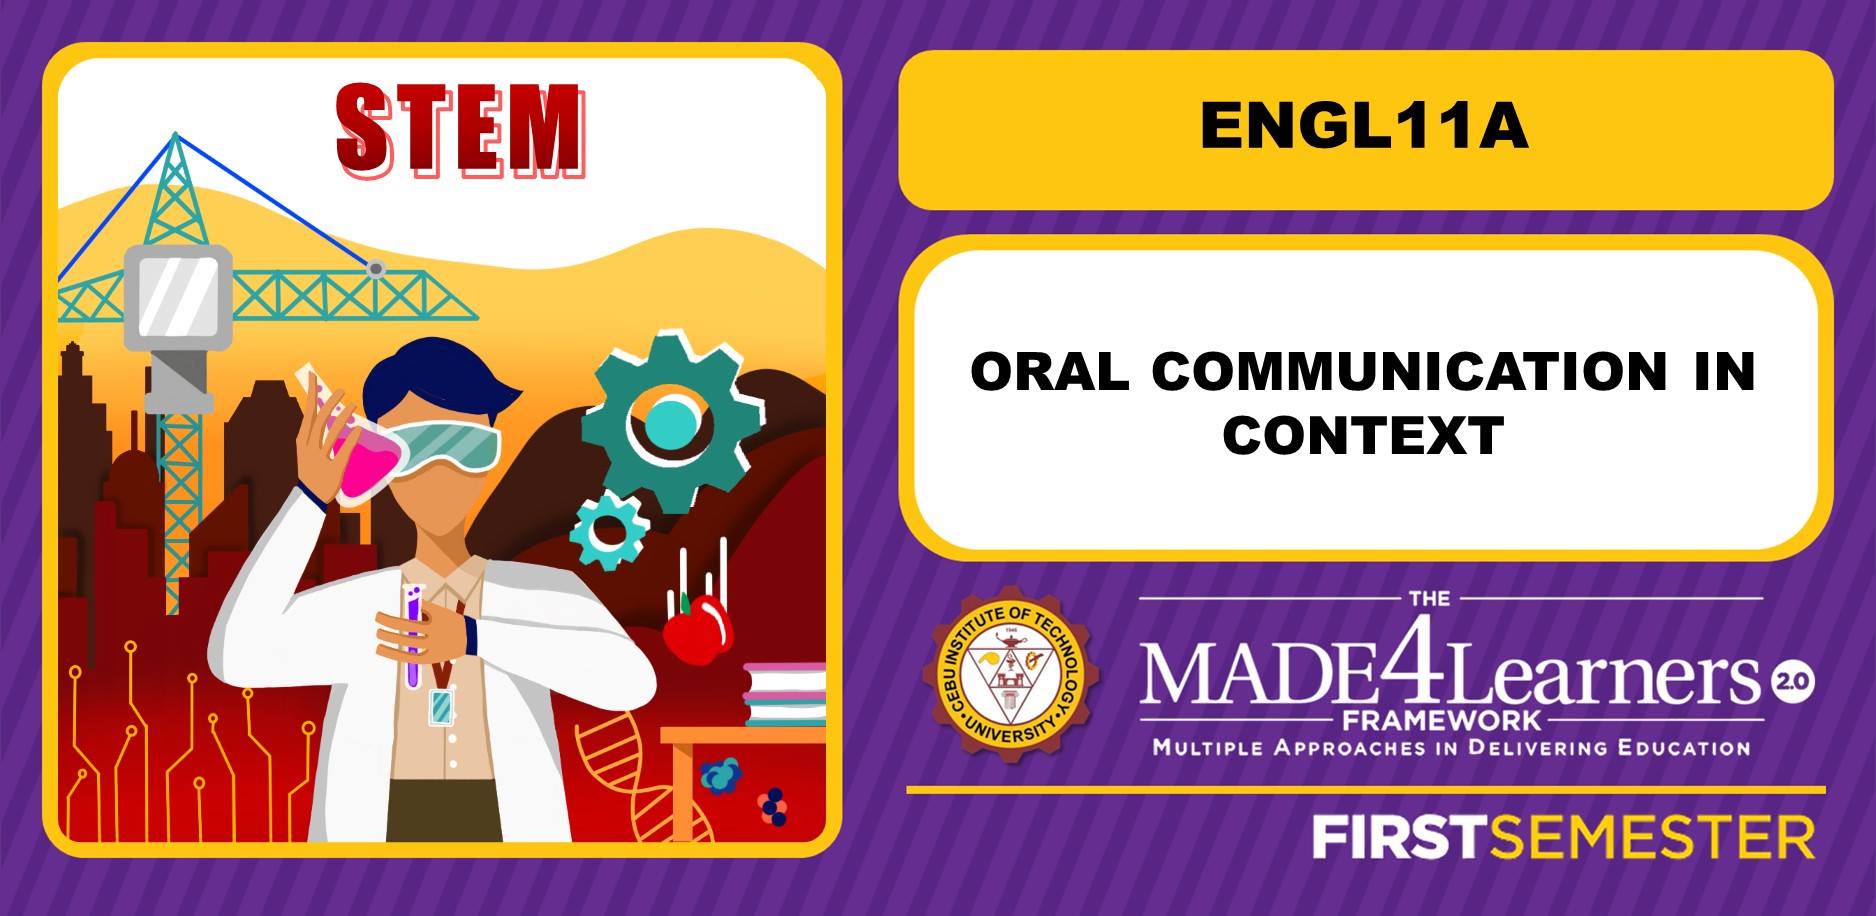 ENGL11A: Oral Communication in Context (Peñaranda)